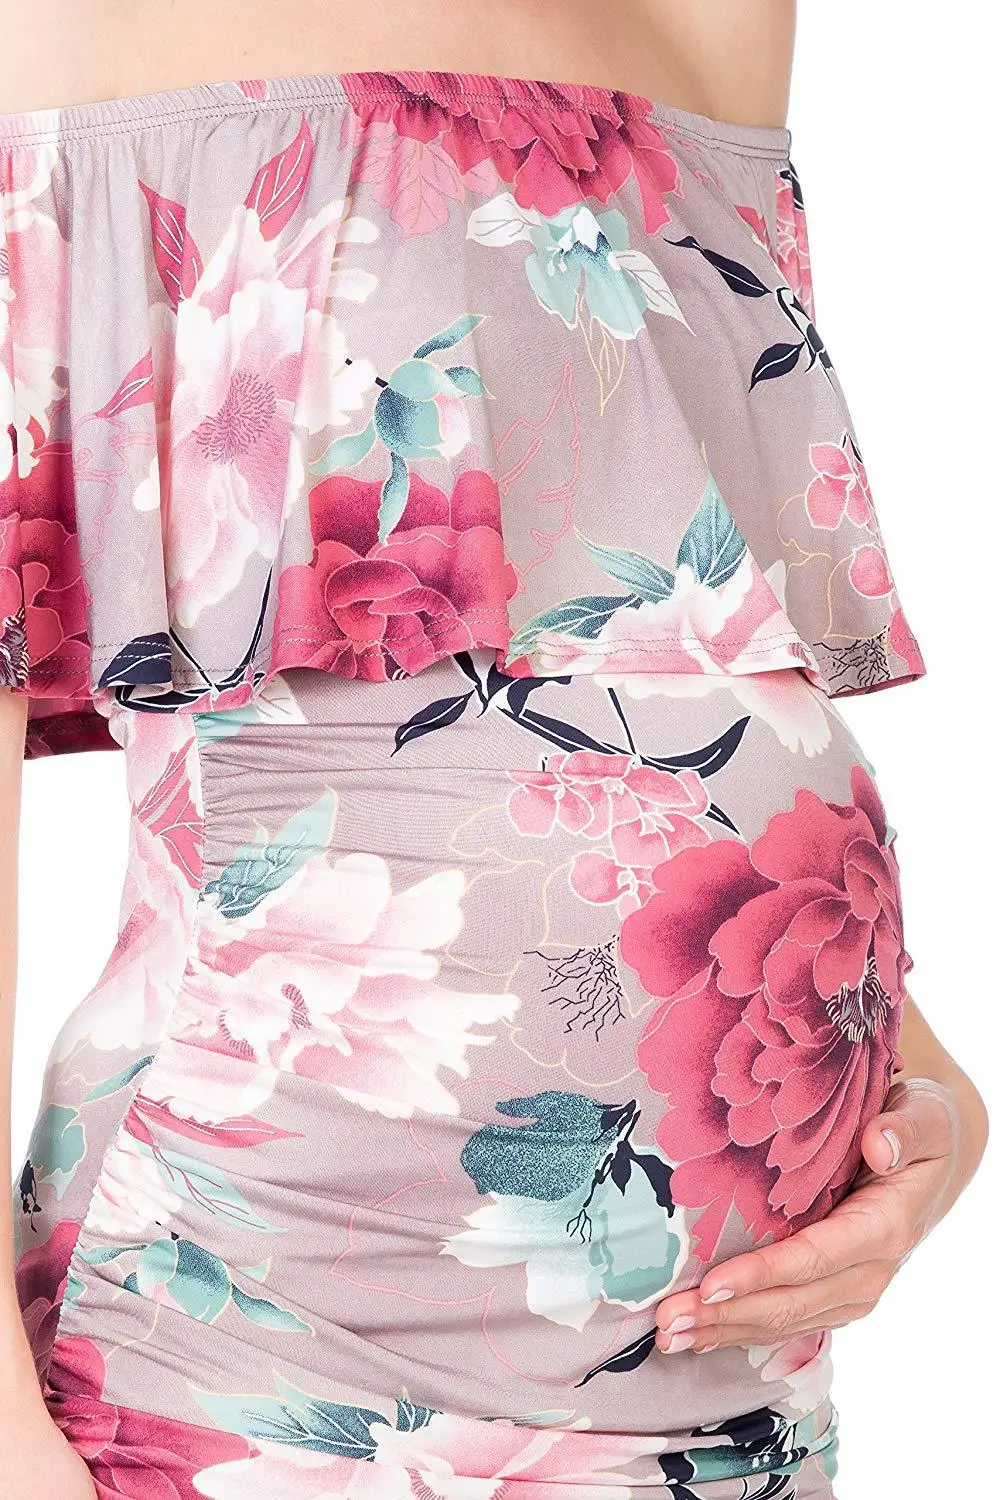 Shujin Материнство платья фотография женщина платье повседневное Pregnants платье удобный зеленый розовый цвет